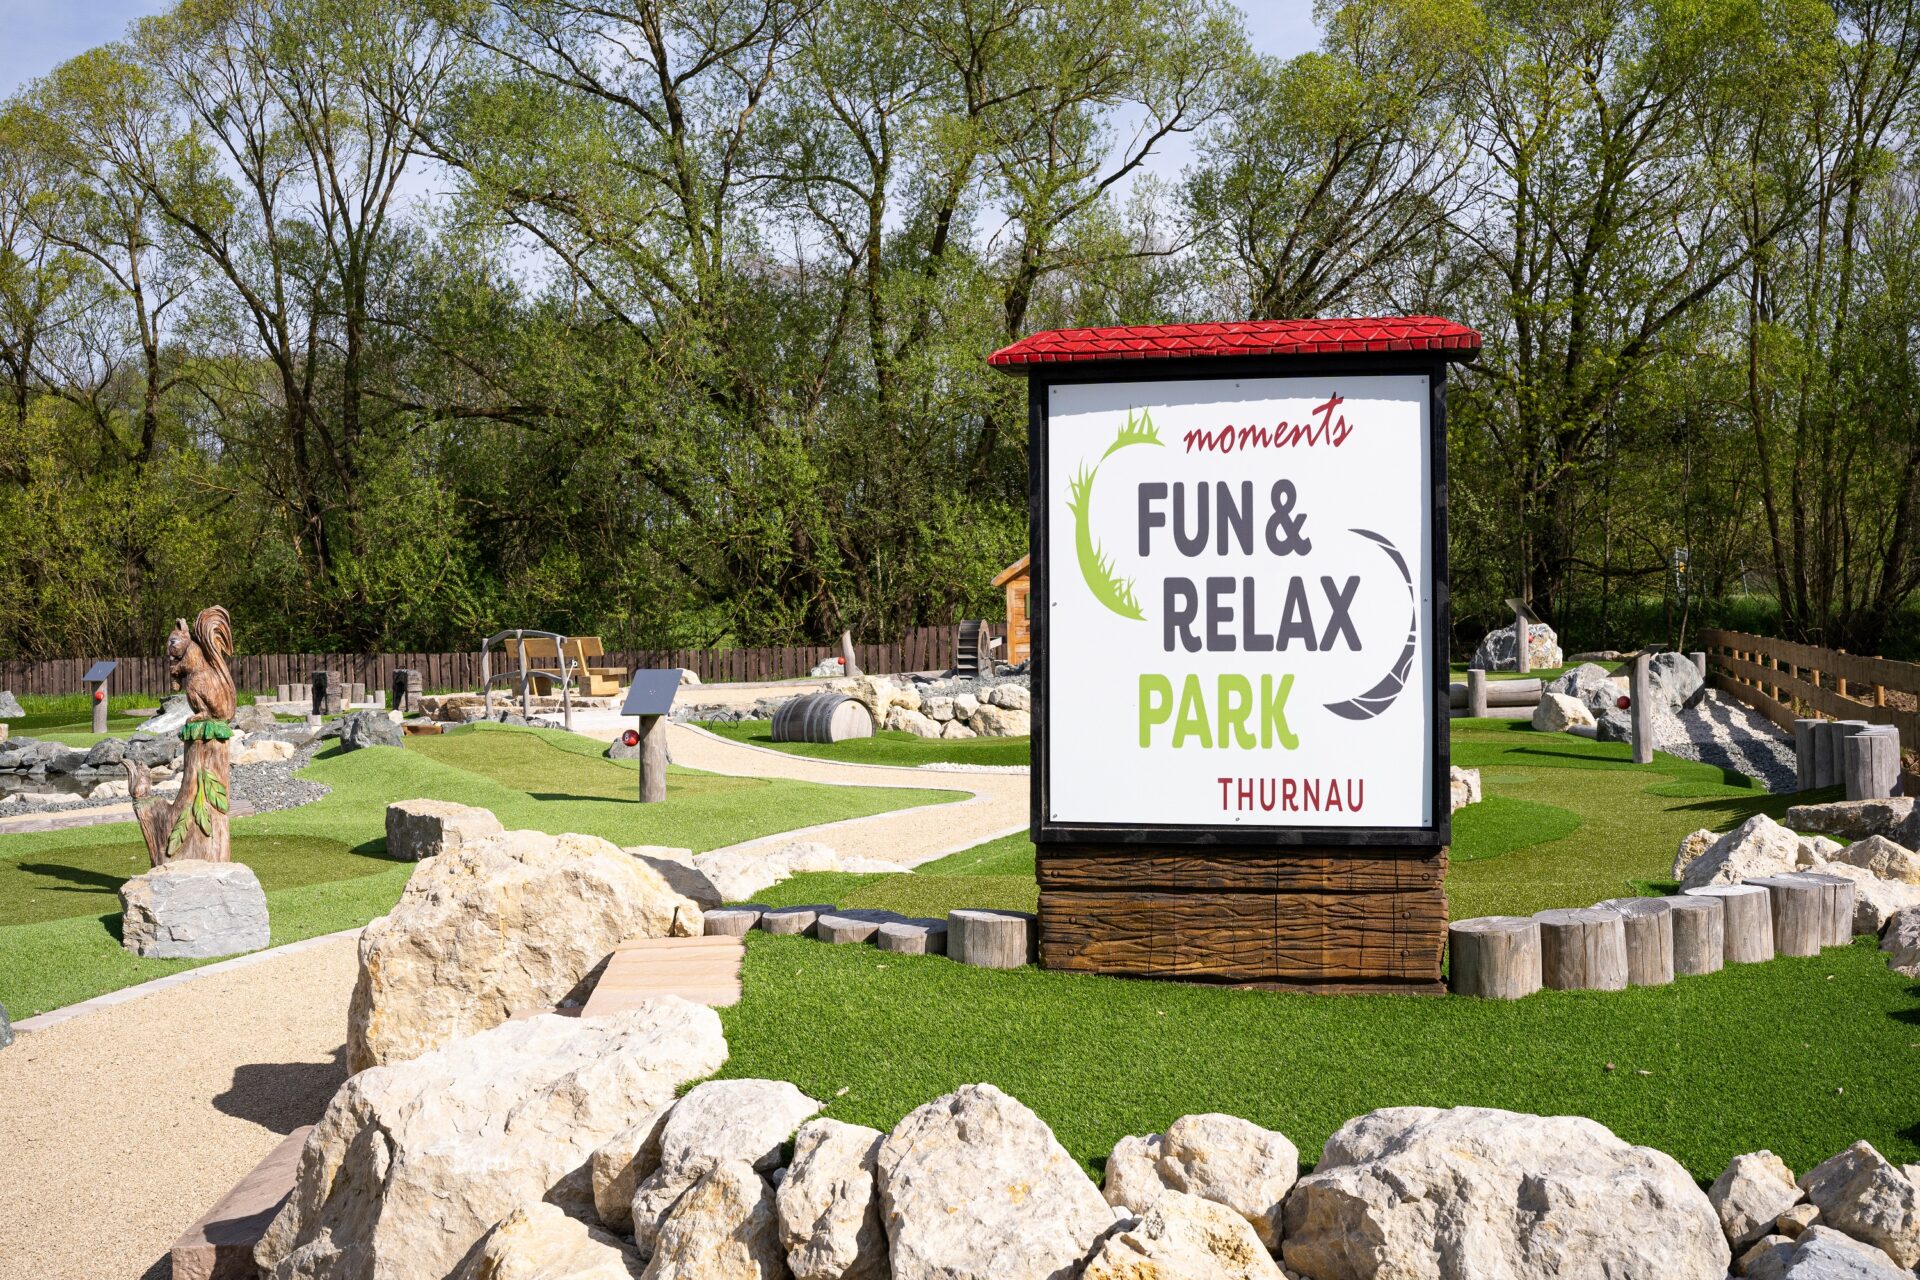 moments Fun & Relax Park ist geöffnet!